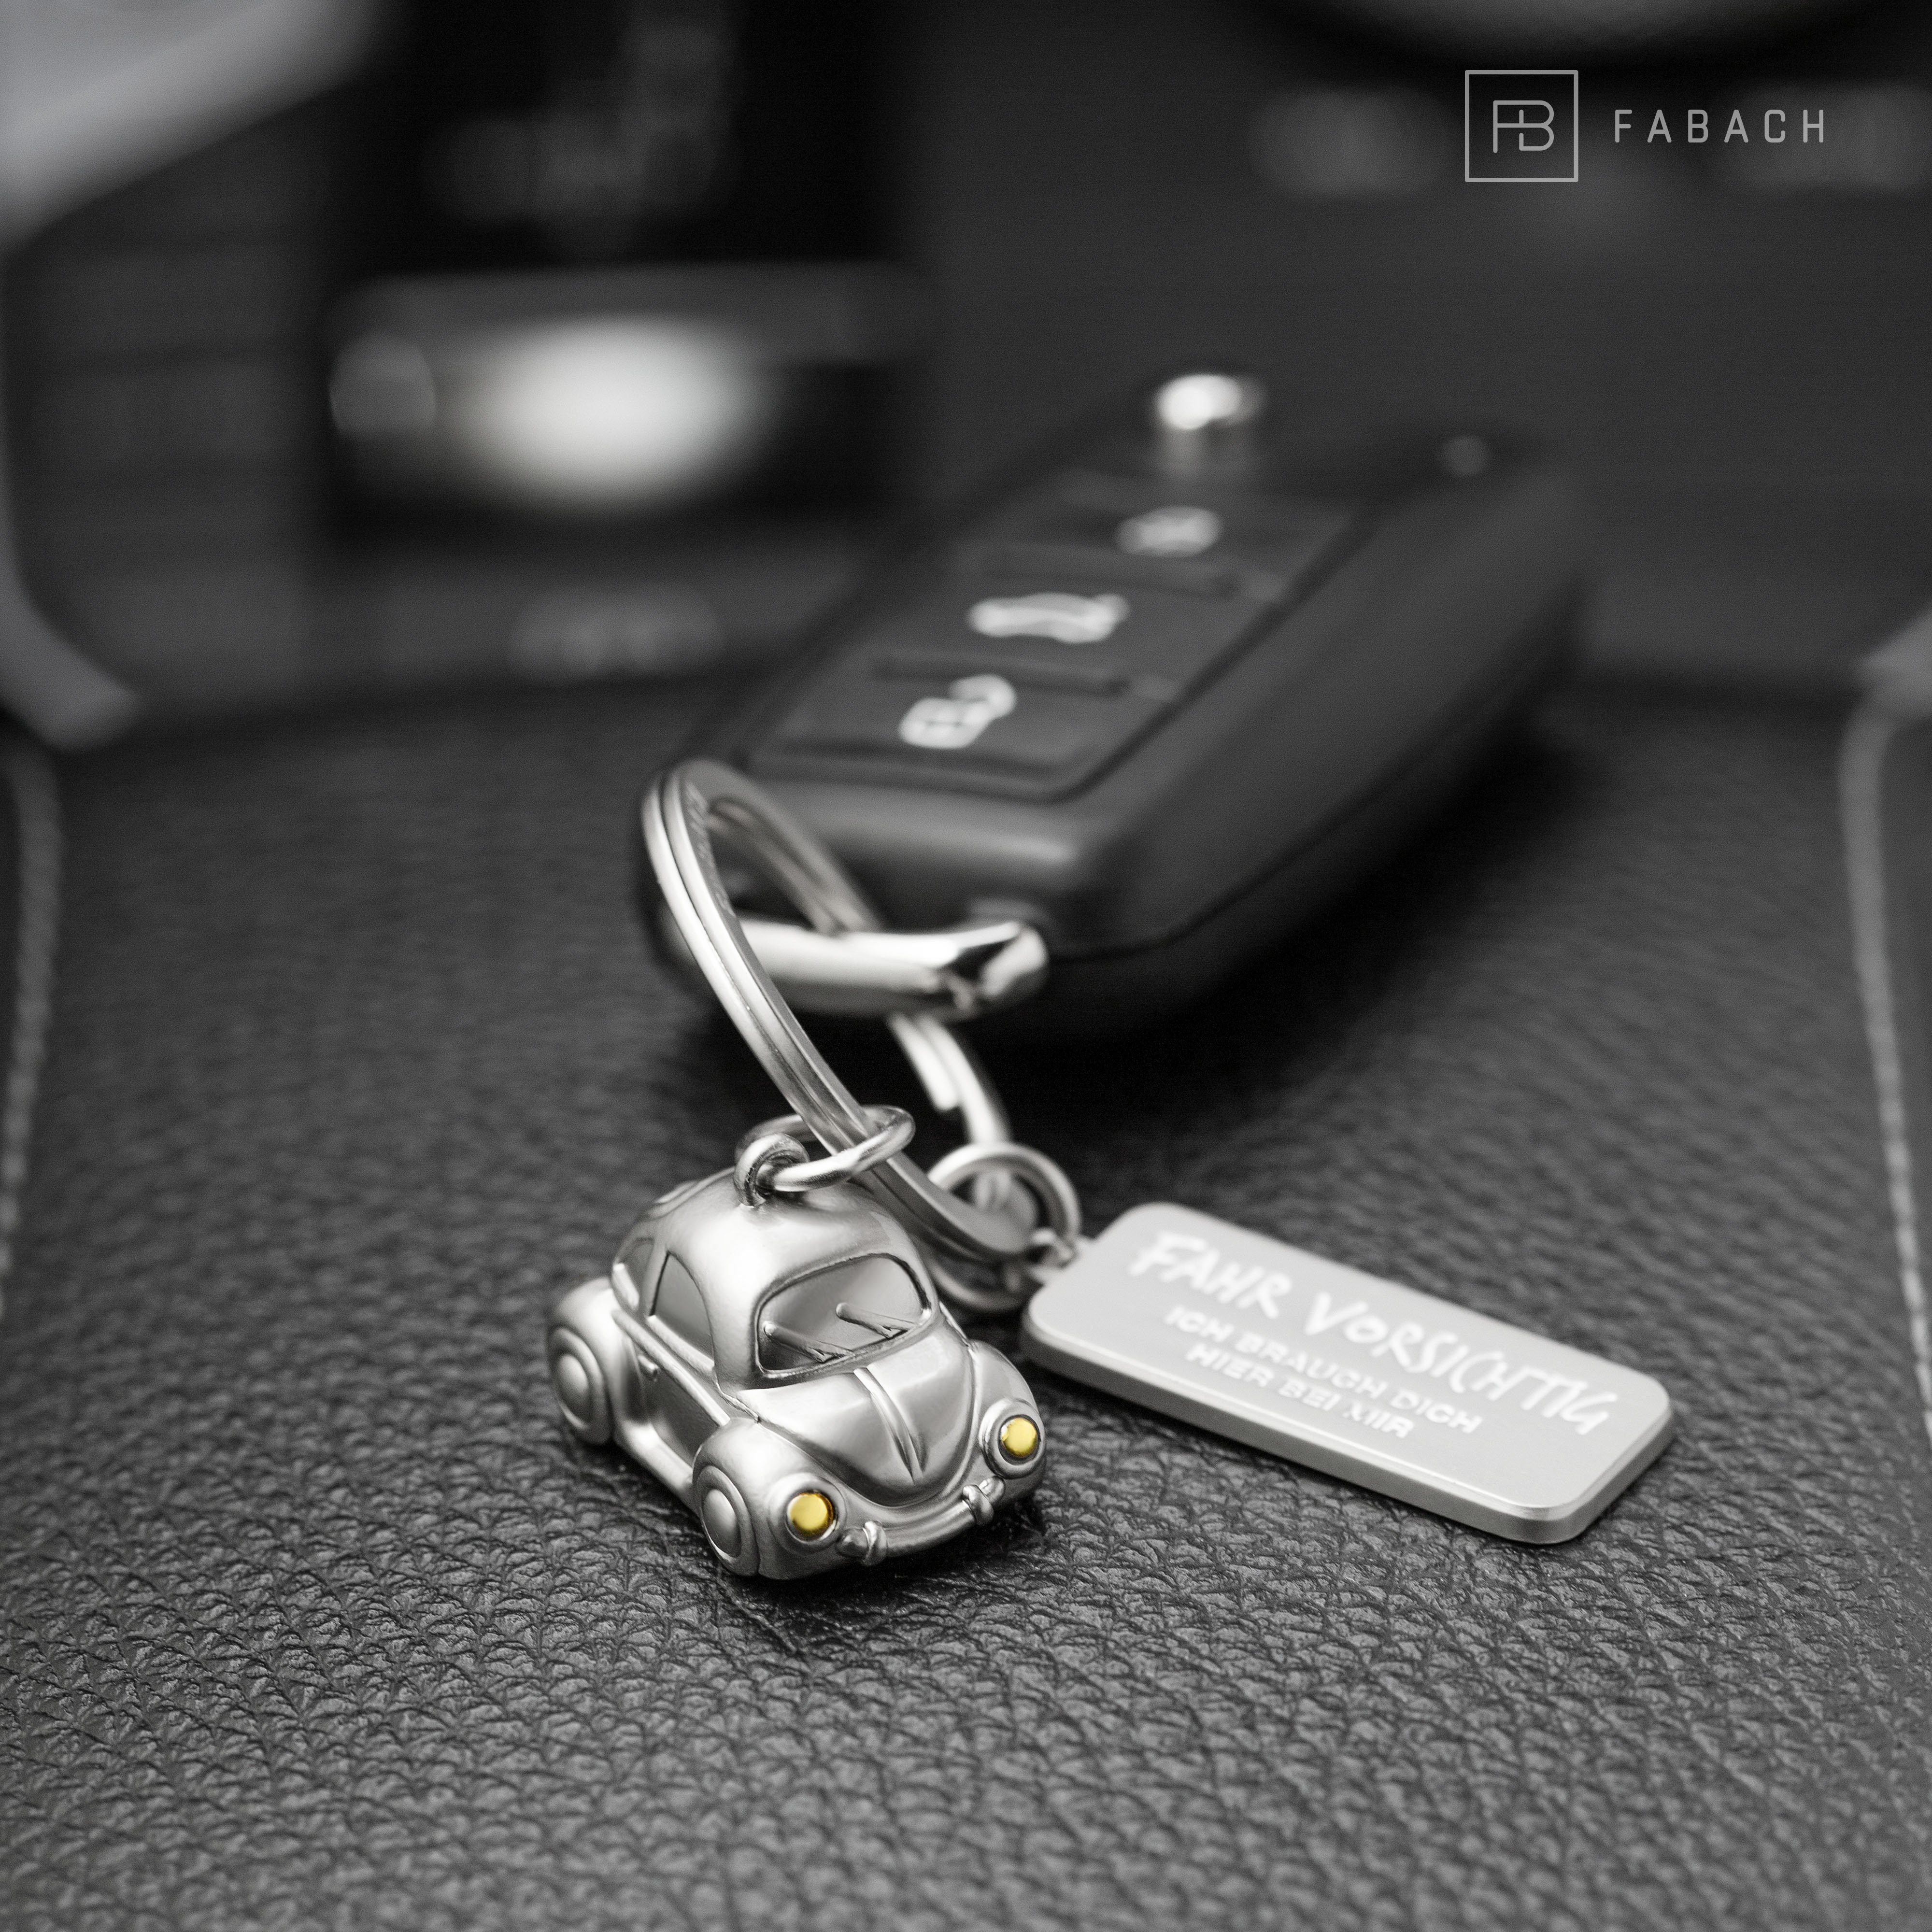 vorsichtig" "Fahr "Car" Auto mit Glücksbringer FABACH Miniatur - Schlüsselanhänger Gravur Gold